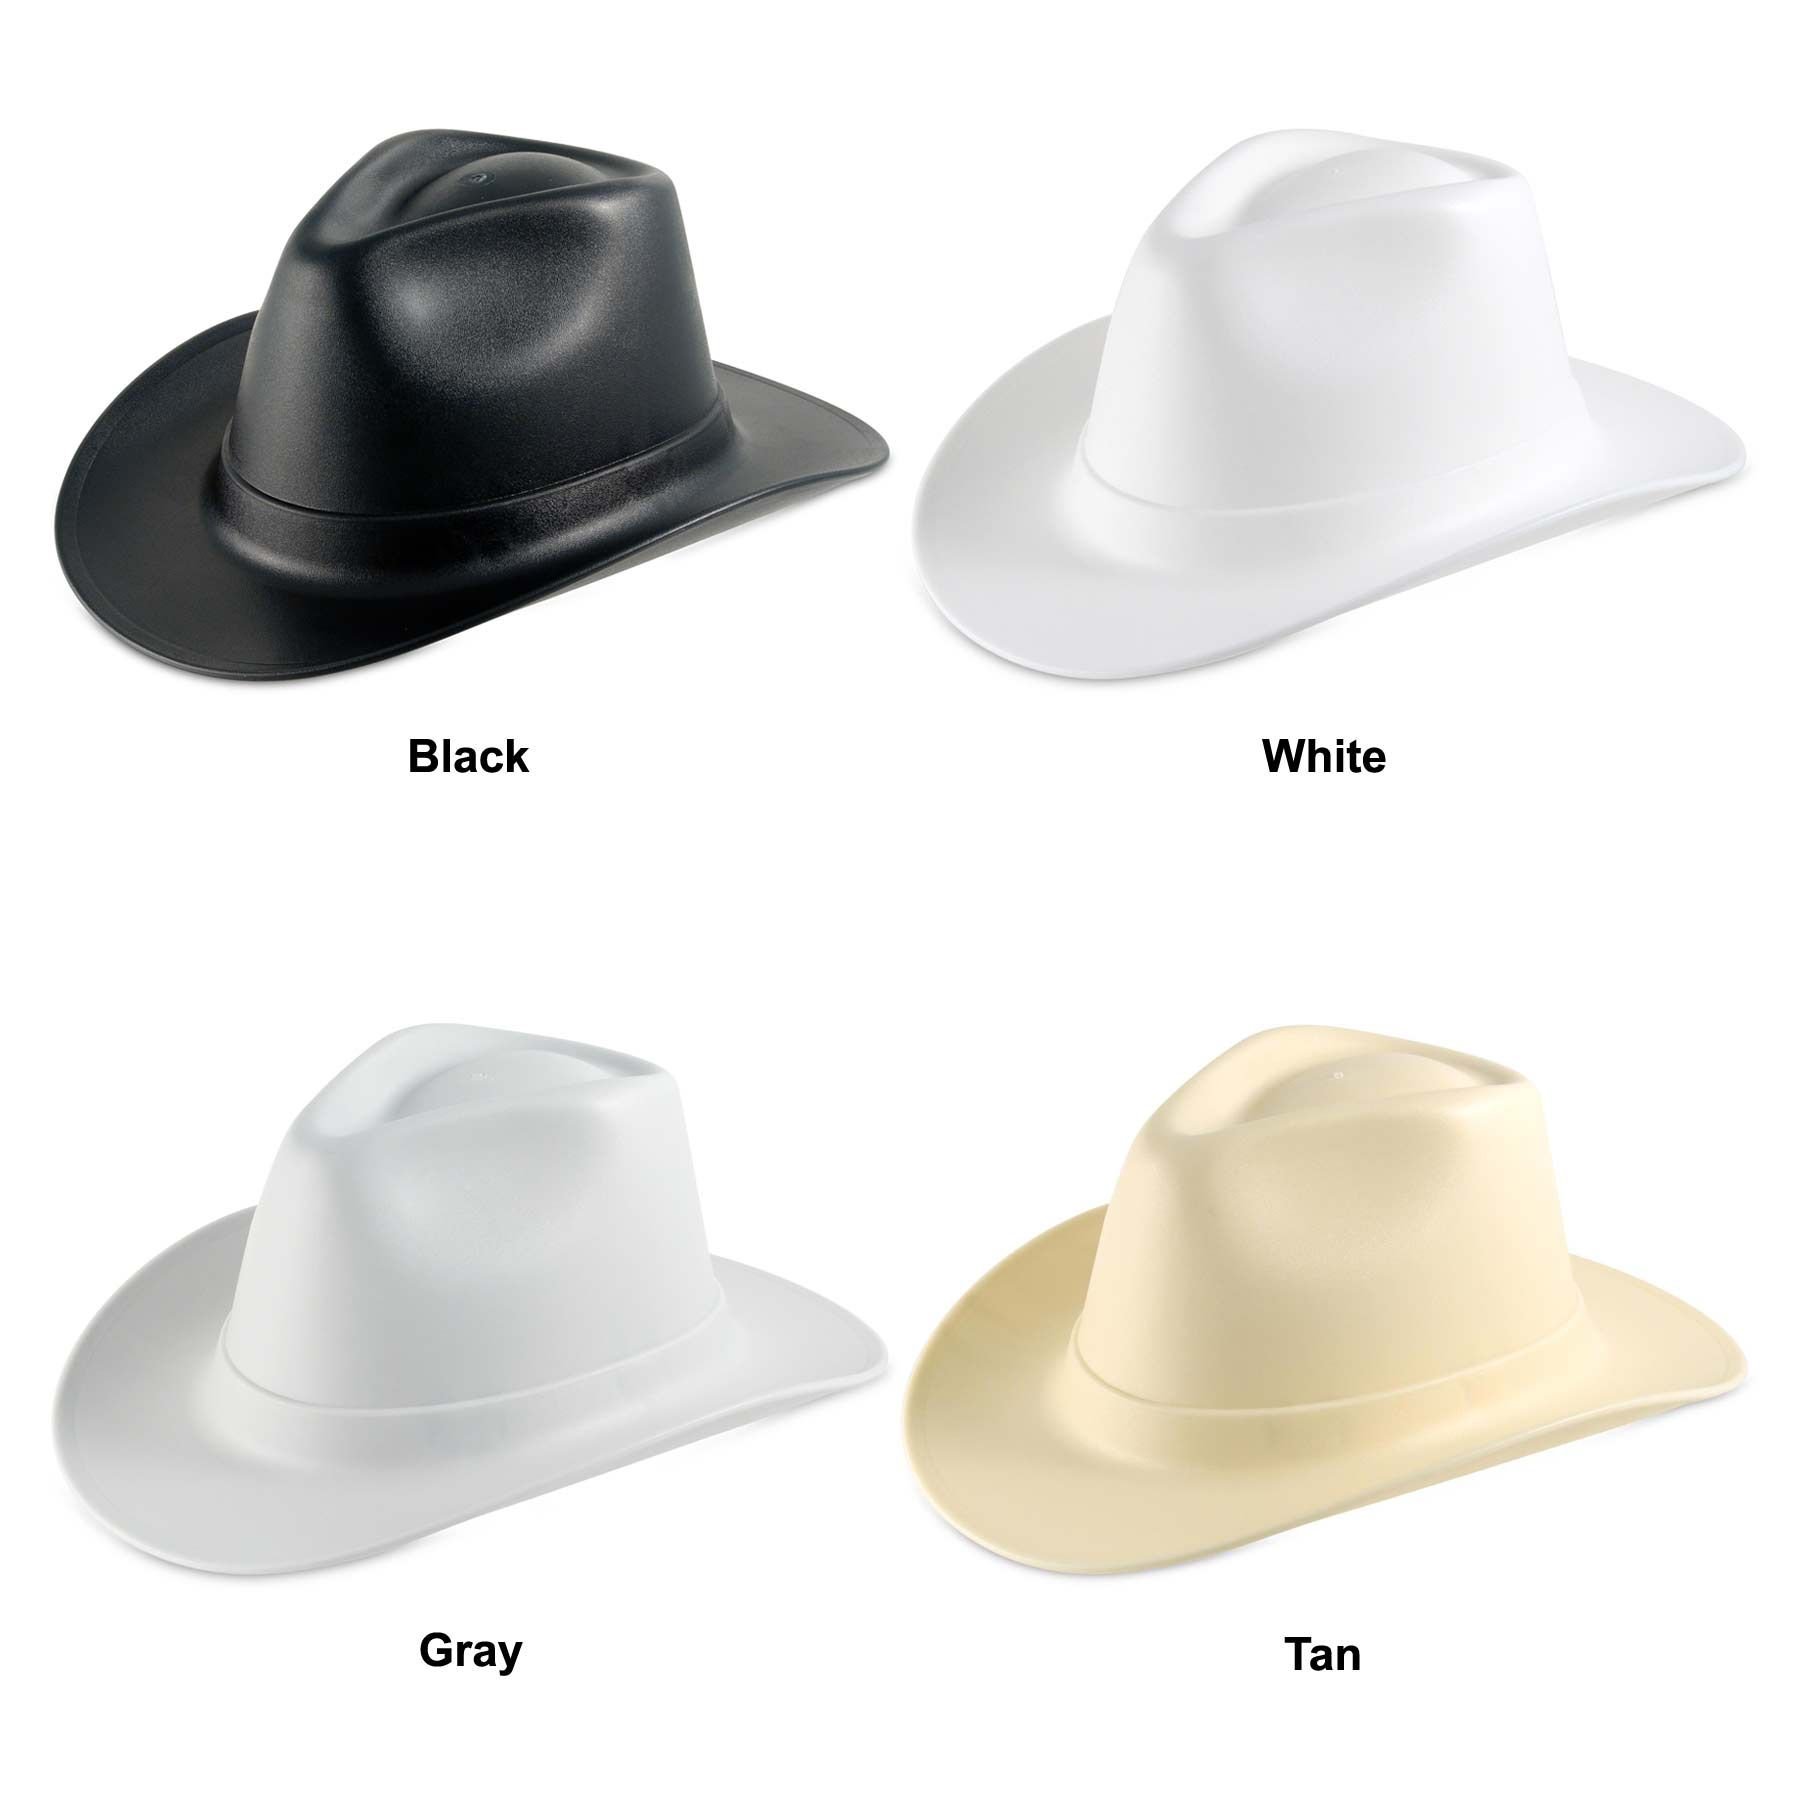 Купить каску шляпу строительную. Vulcan Cowboy Style hard hat White. Каска строительная шляпа. Каска ковбойская шляпа строительная.